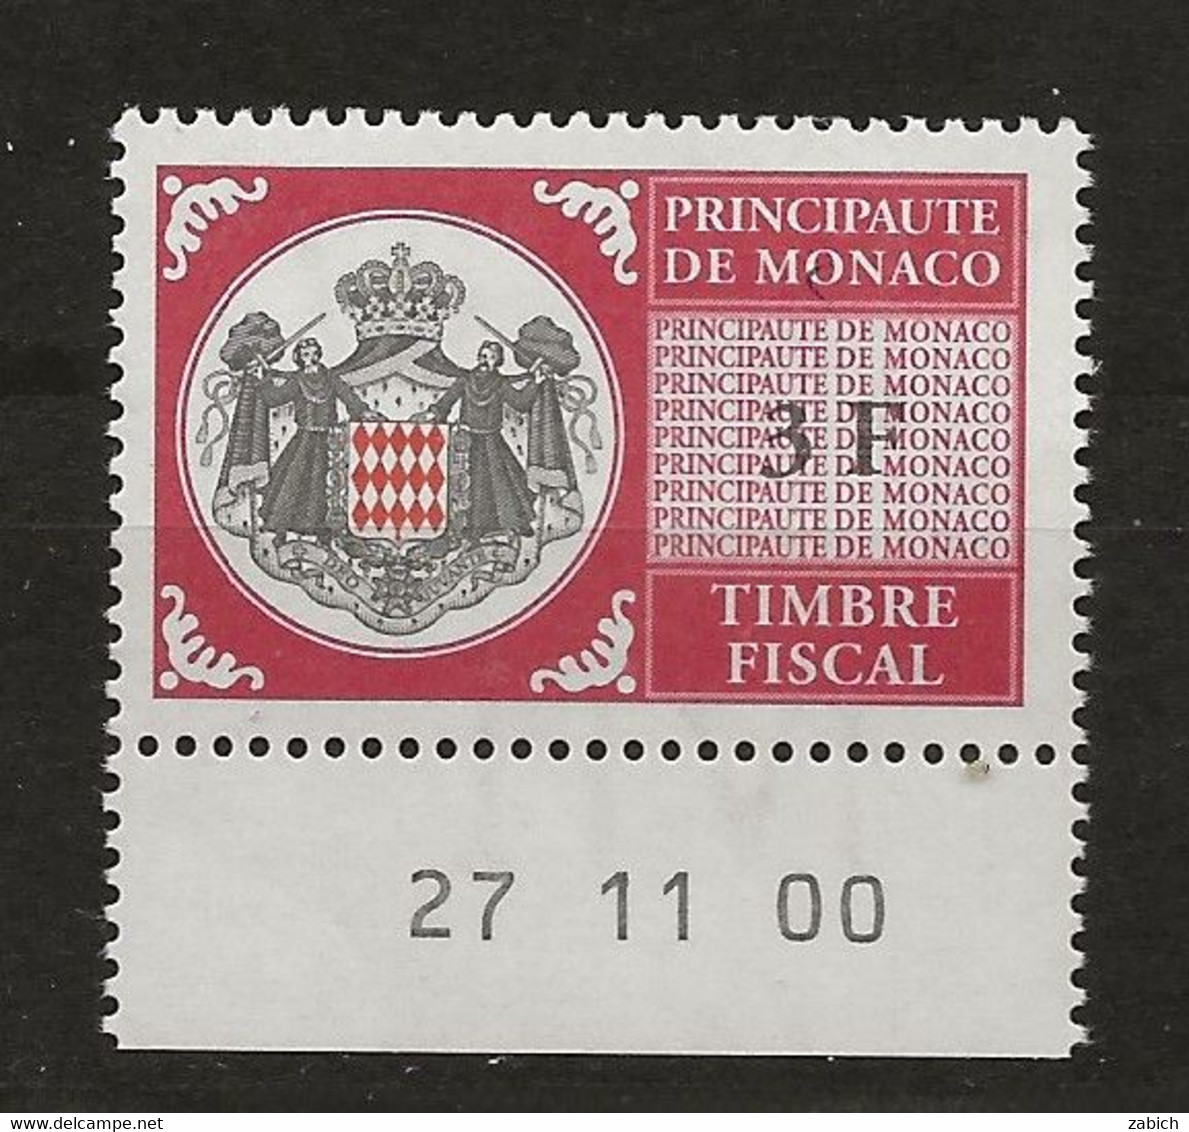 TIMBRES FISCAUX DE MONACO SERIE UNIFIEE N°99 3 F Rouge  Coin Daté Du 27 11 00 Neuf Gomme Mnh (**) - Revenue